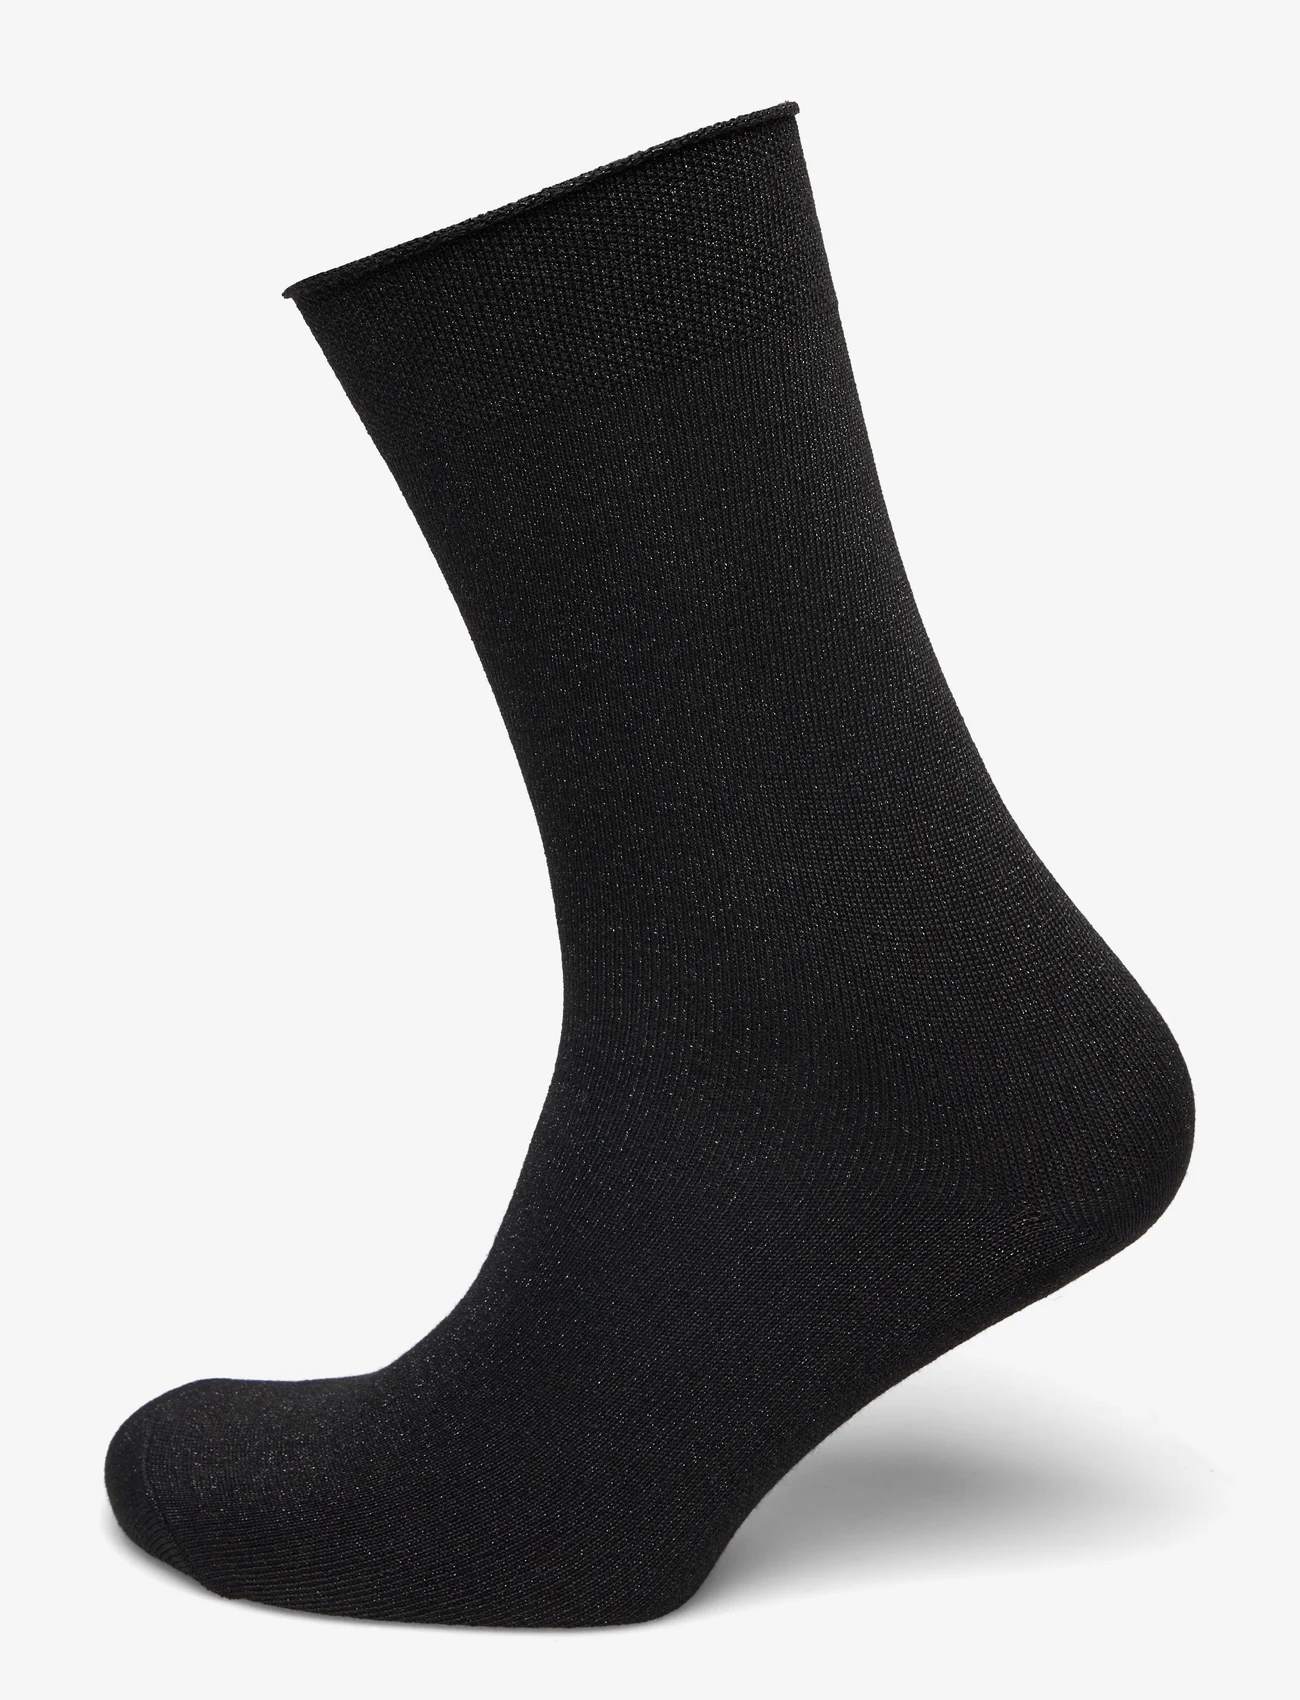 mp Denmark - Lucinda socks - lägsta priserna - black - 0